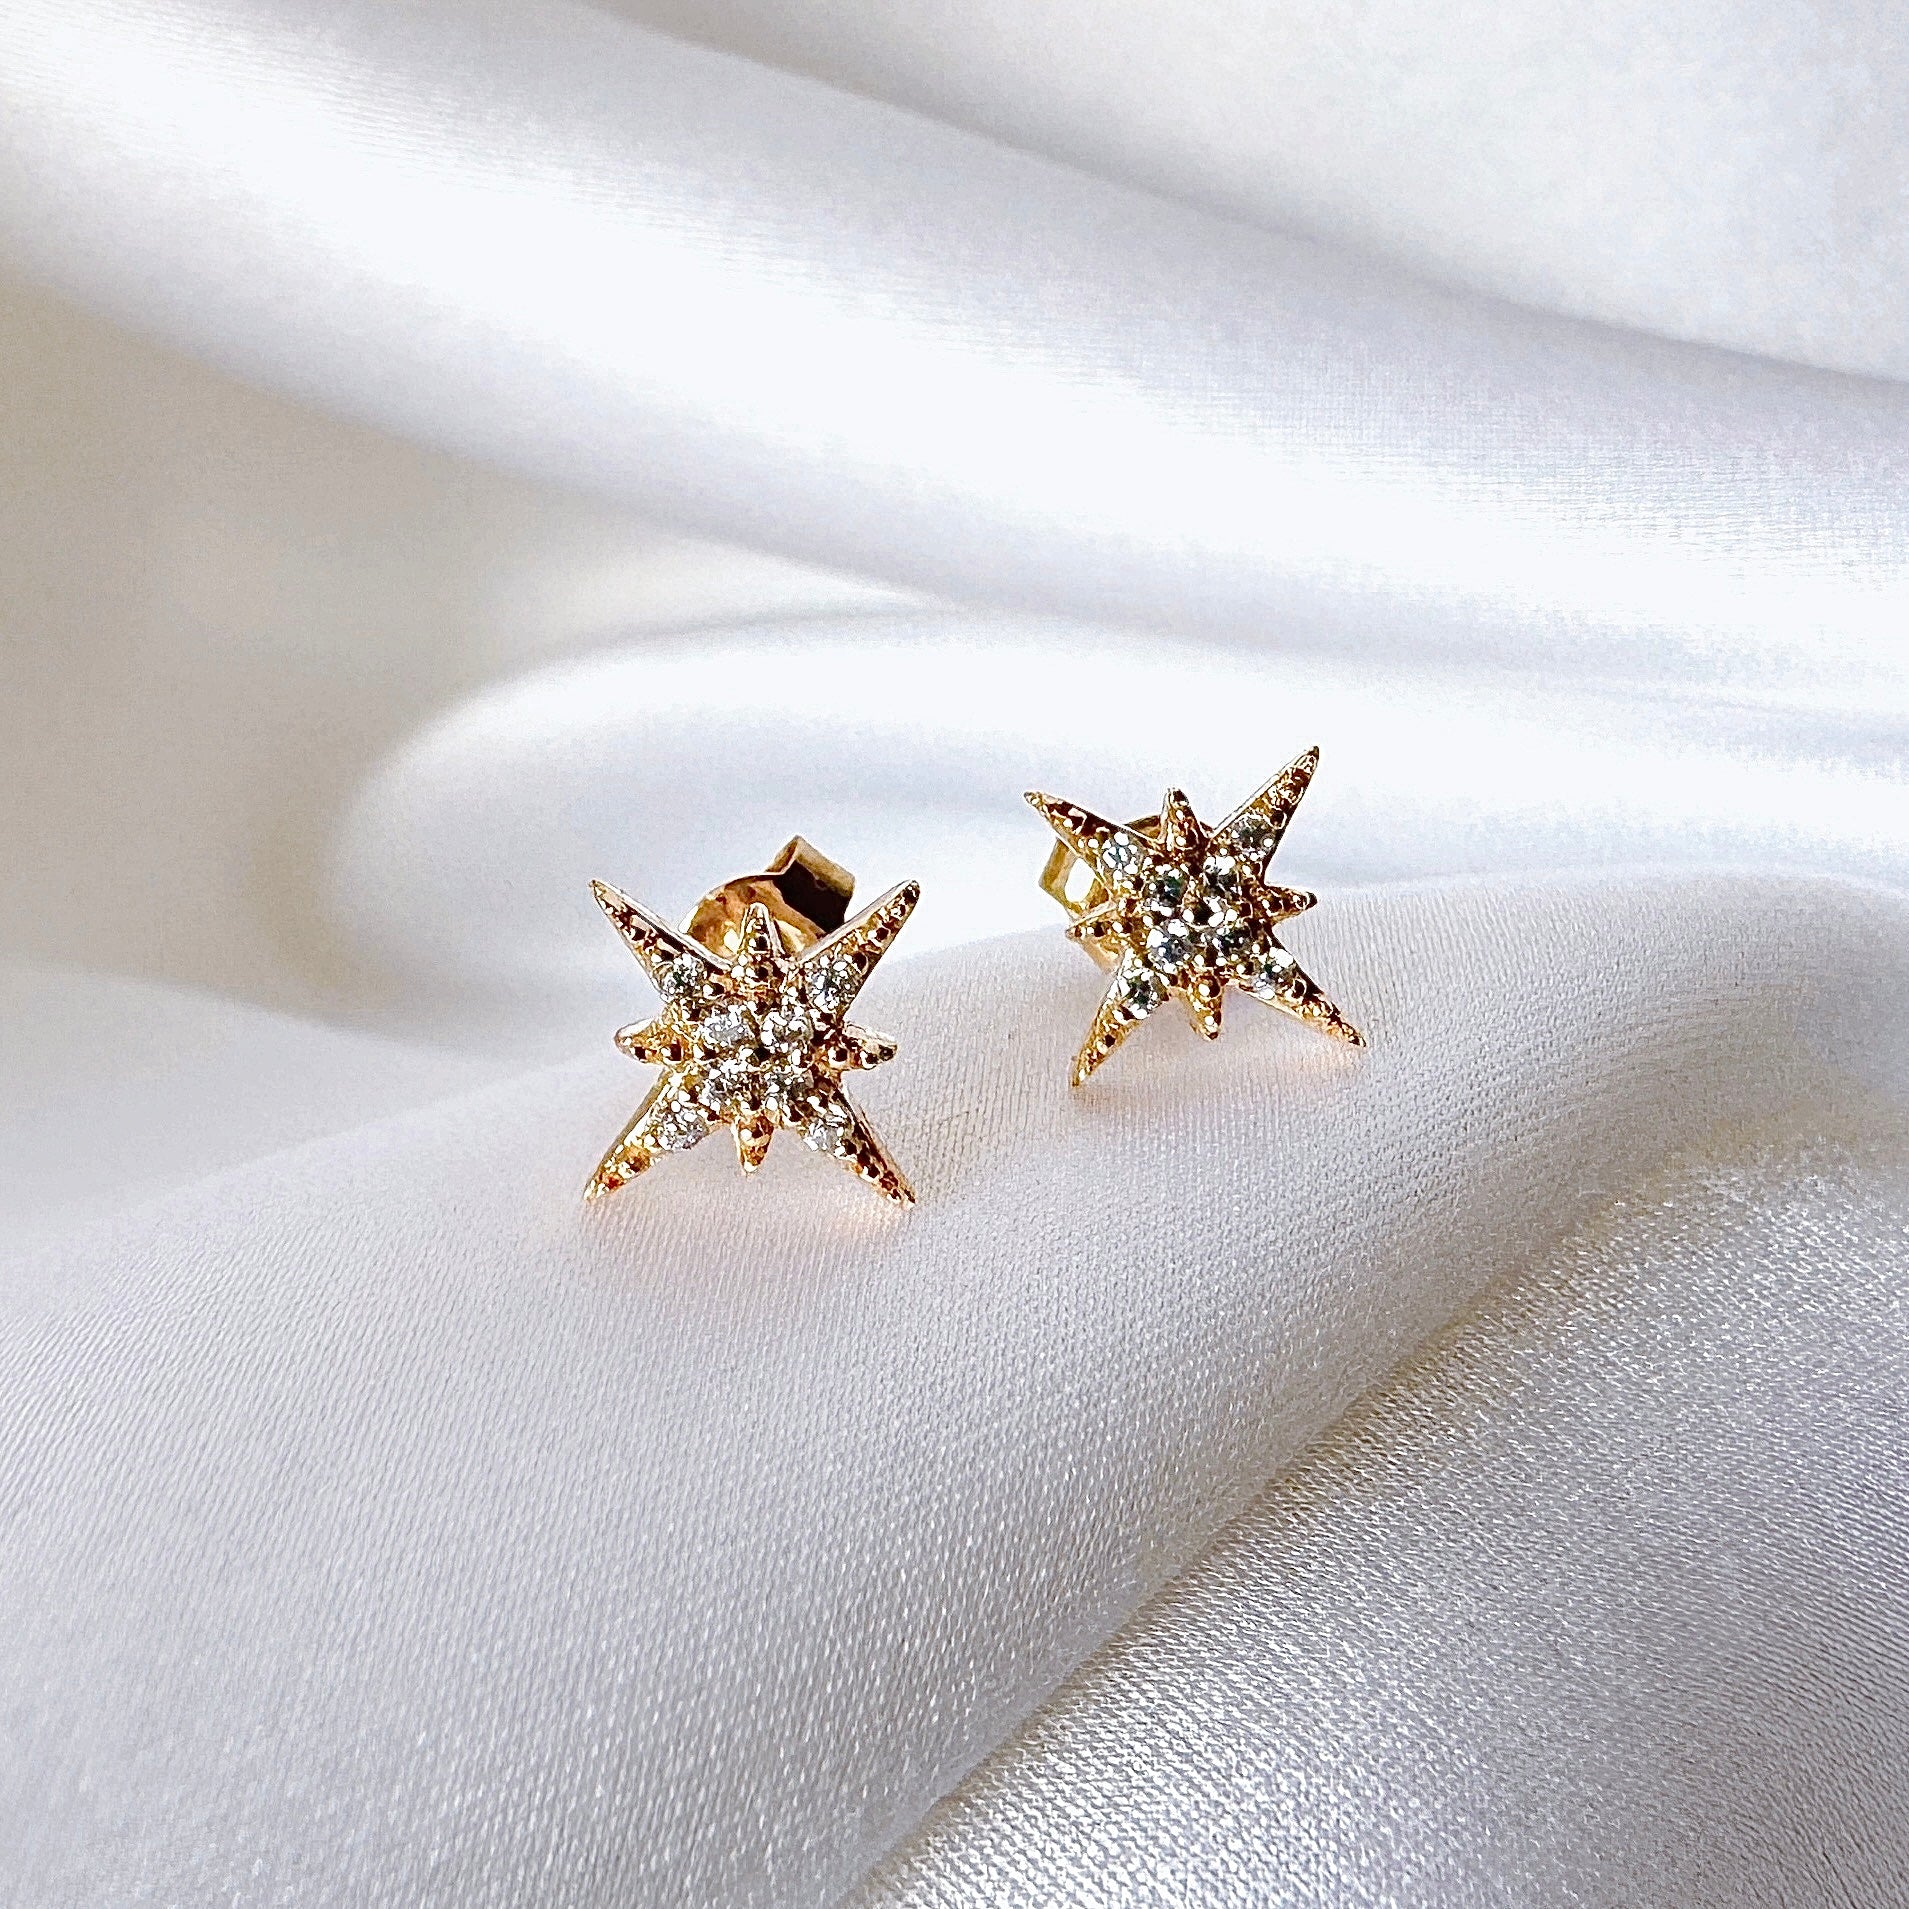 Gold-plated “Starlette” earrings